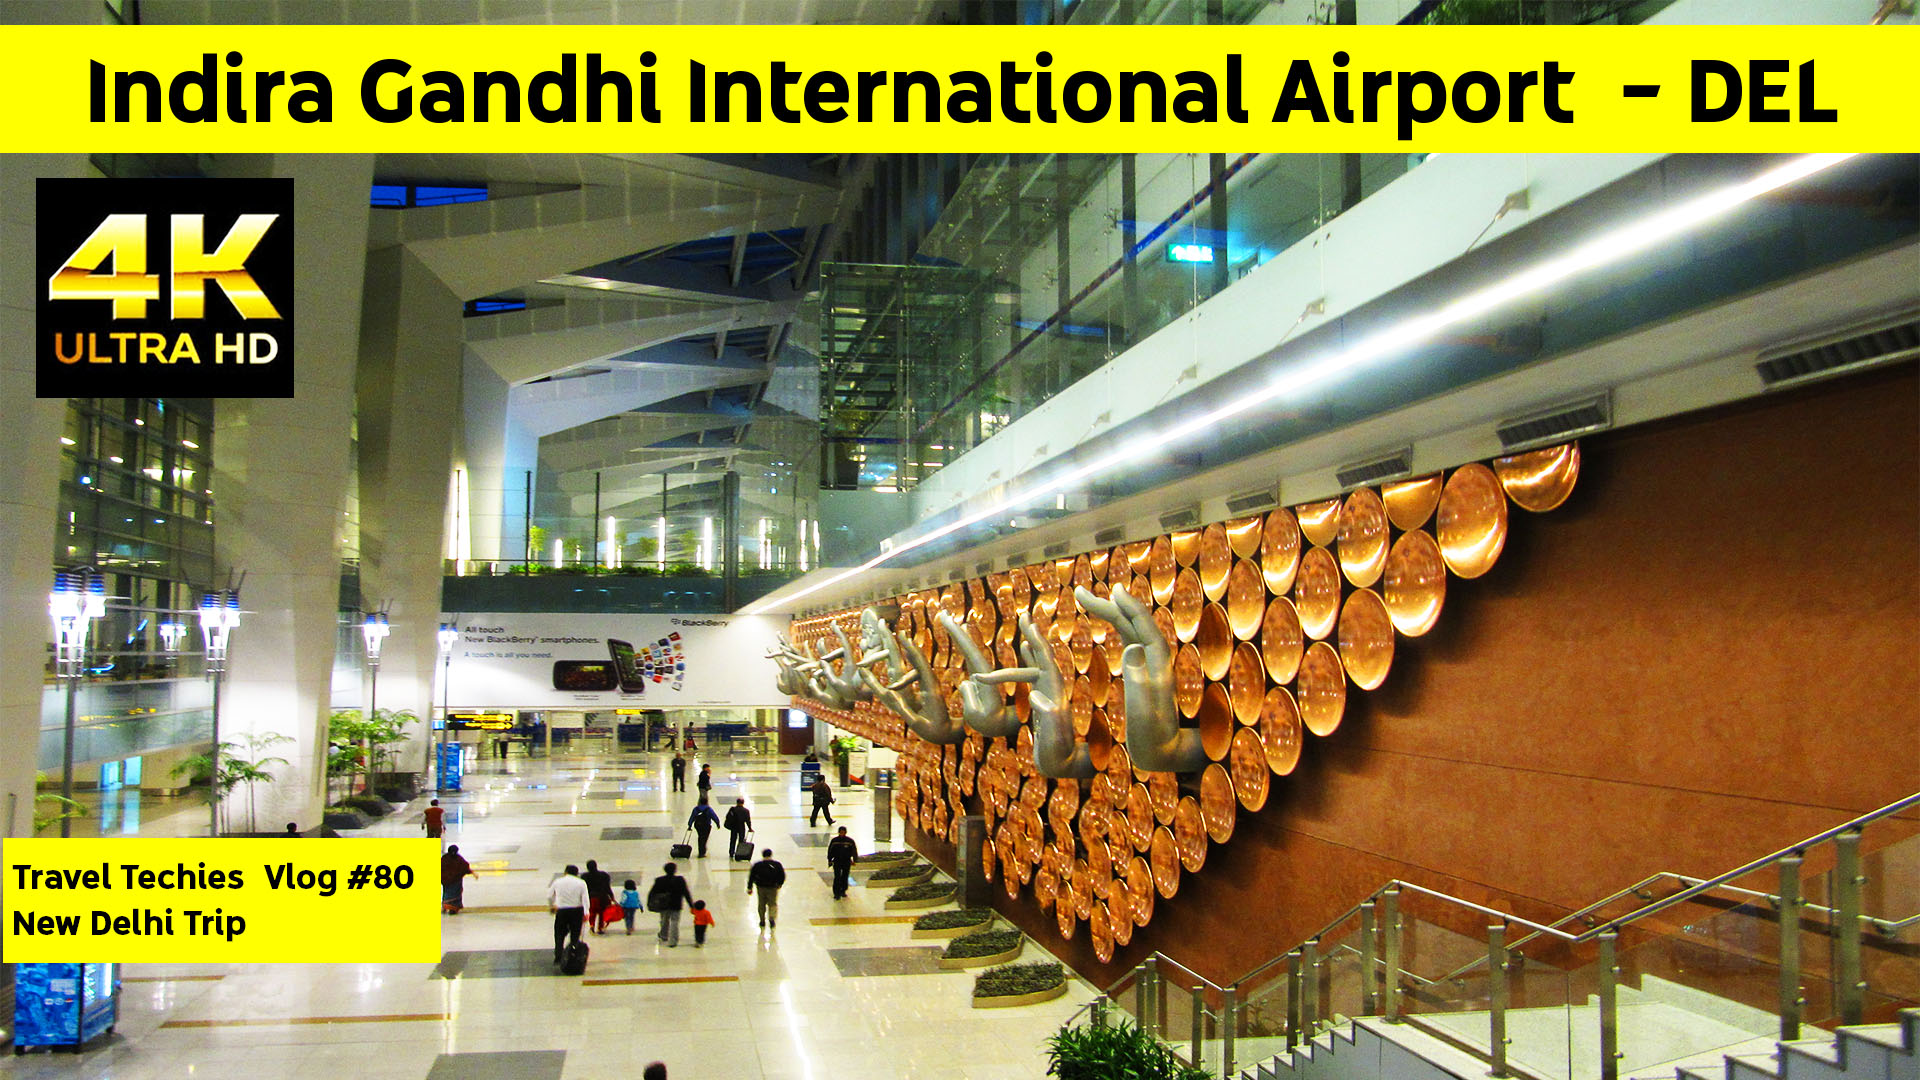 Дели терминалы. Аэропорт Индиры Ганди в Дели. Международный аэропорт Индиры Ганди 3. Аэропорт Индиры Ганди в Дели терминал 3. Схема аэропорта Дели Индиры Ганди.